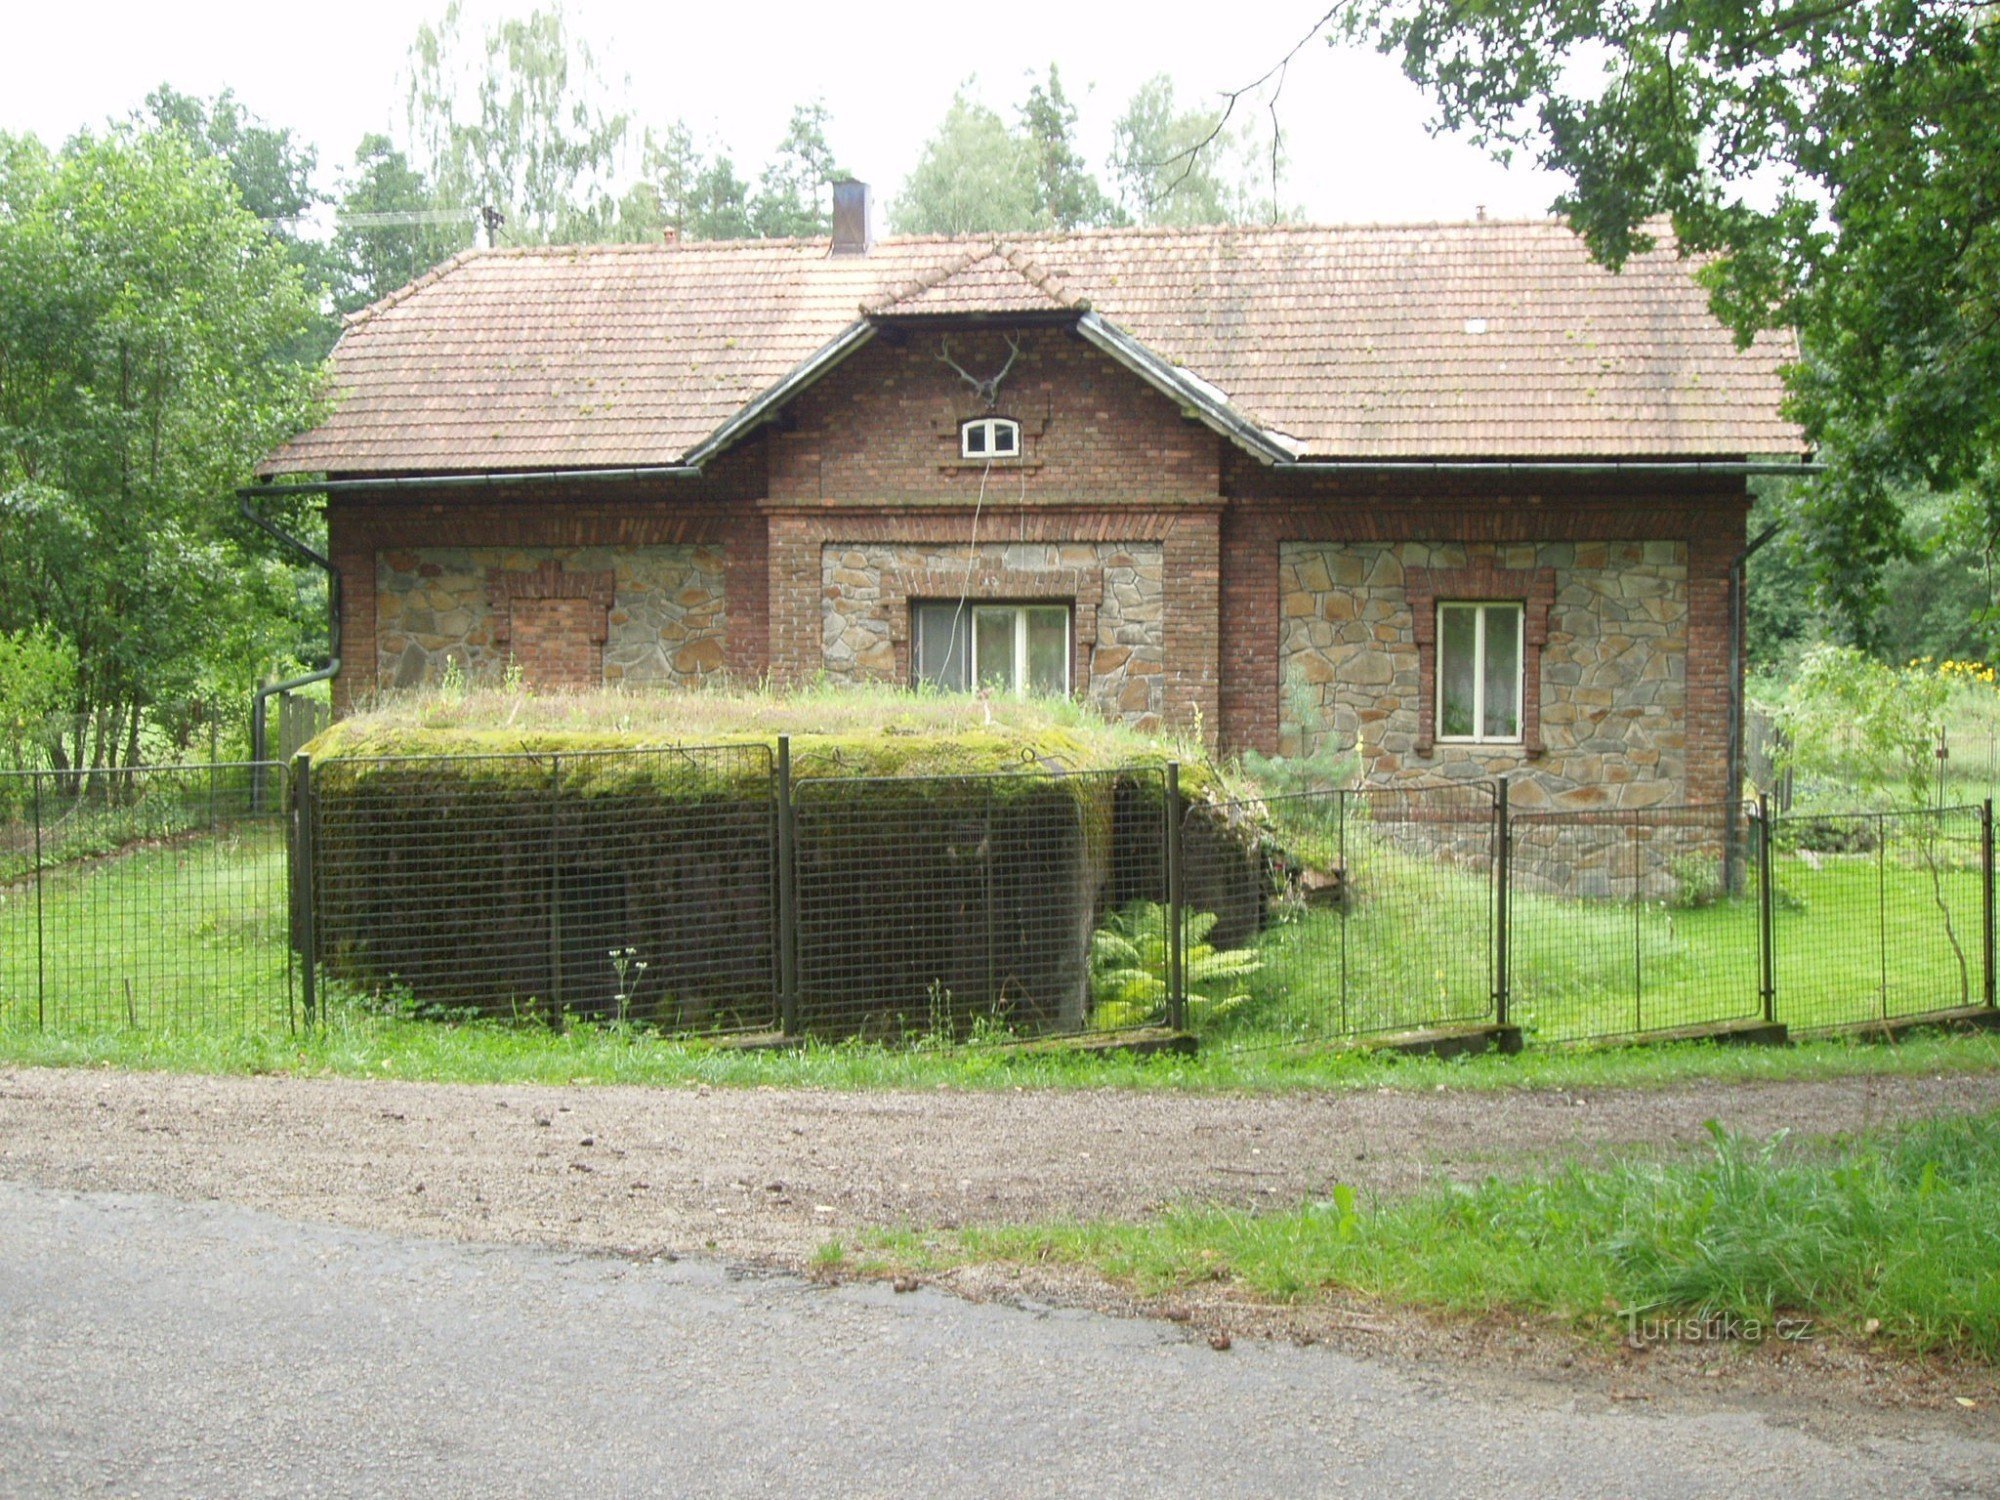 Lätt befästning "ŘOPÍK" i trädgården i viltreservatet i Purkrabí nära Chlum nära Třeboň